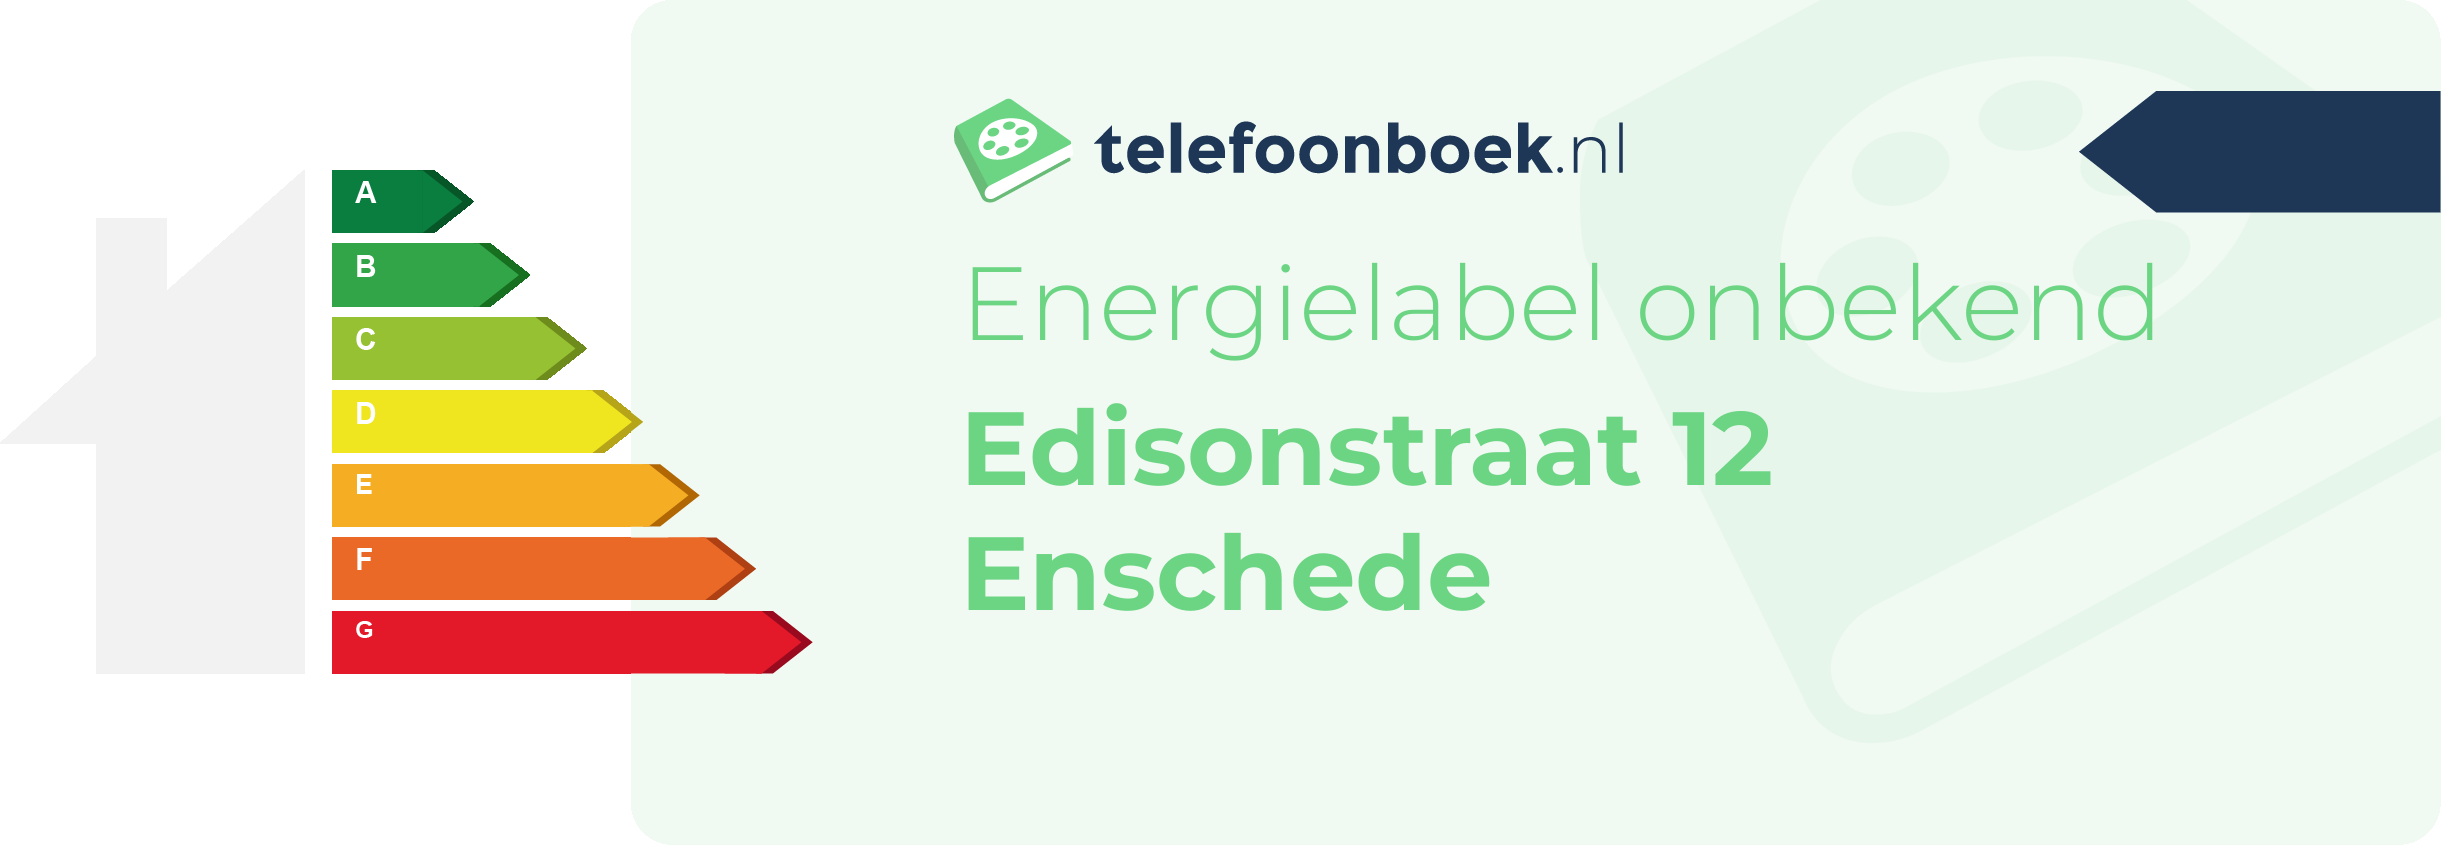 Energielabel Edisonstraat 12 Enschede